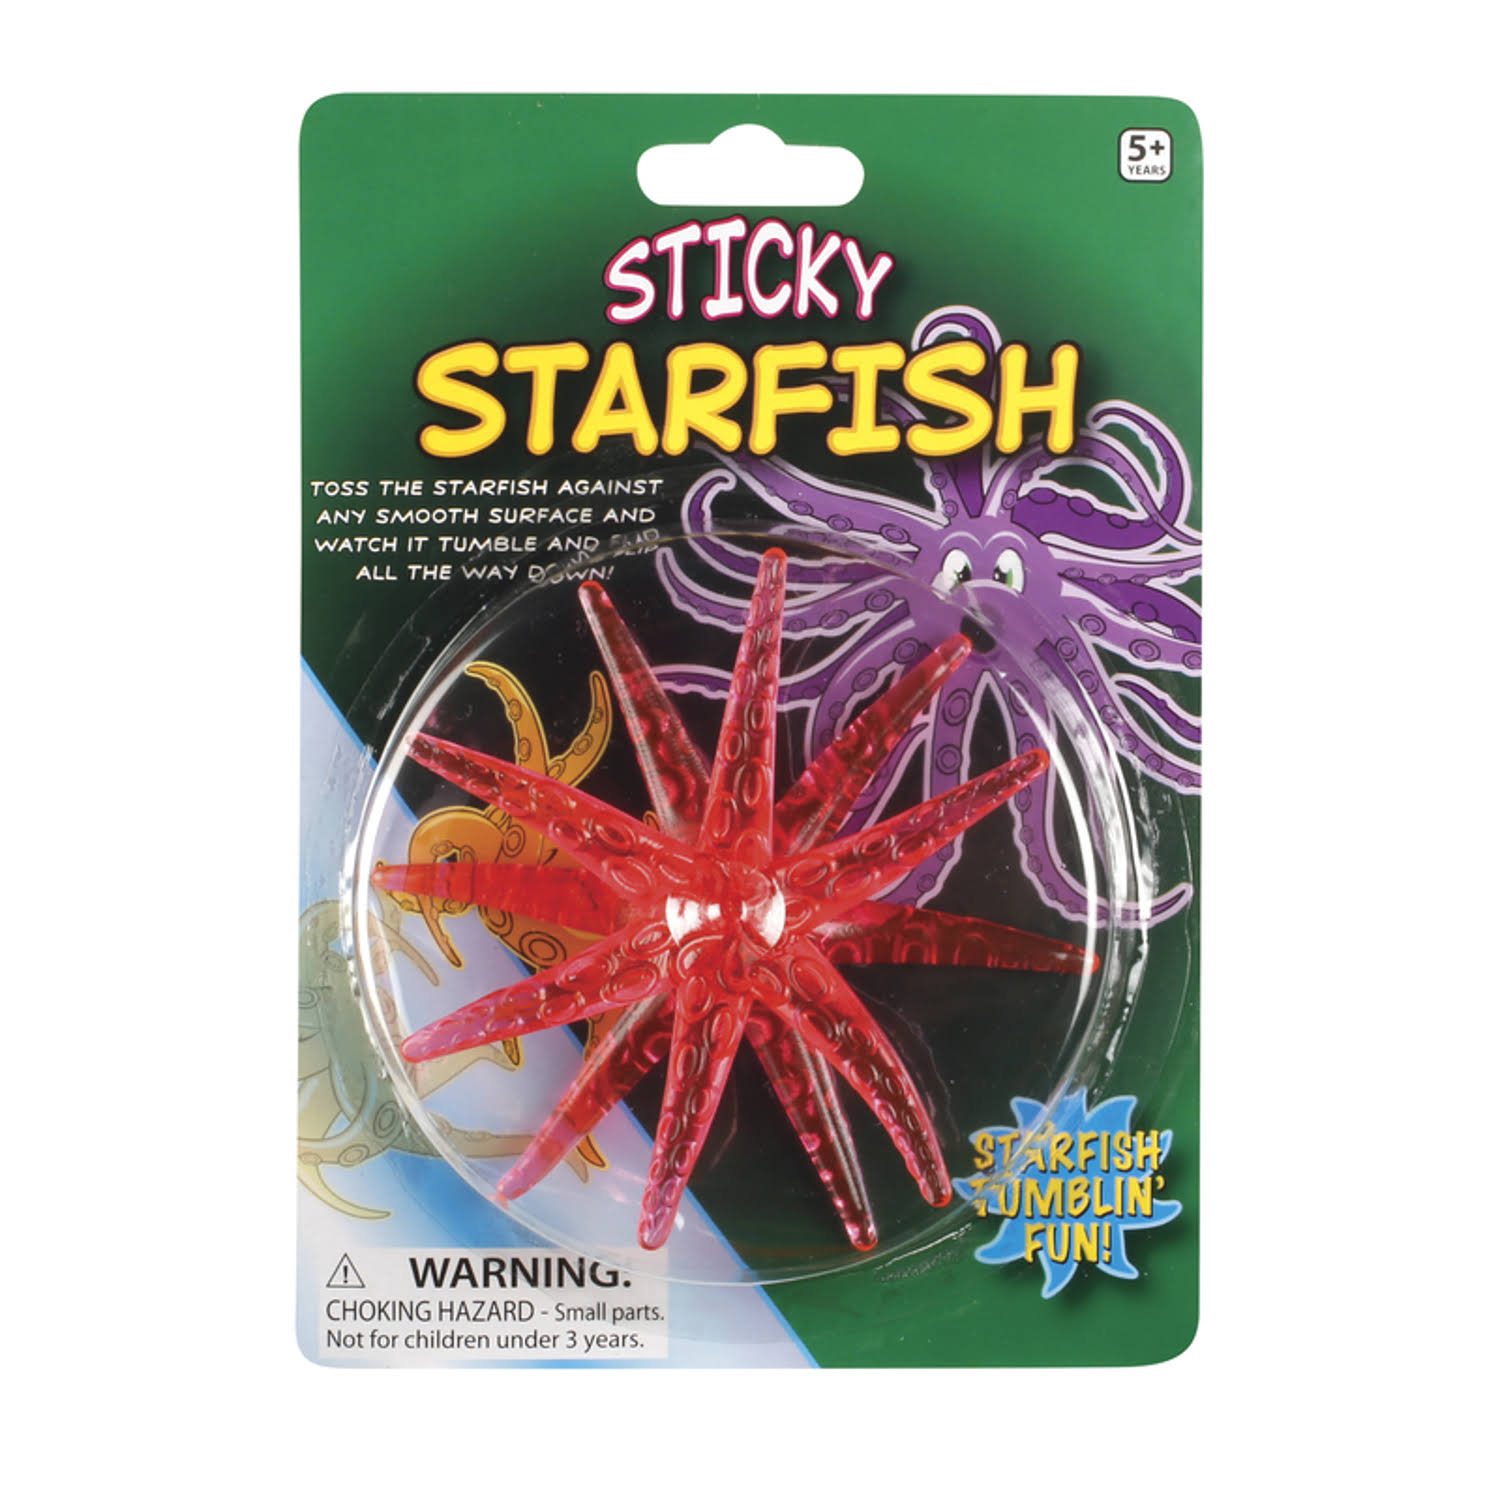 Toysmith Sticky Star Fish